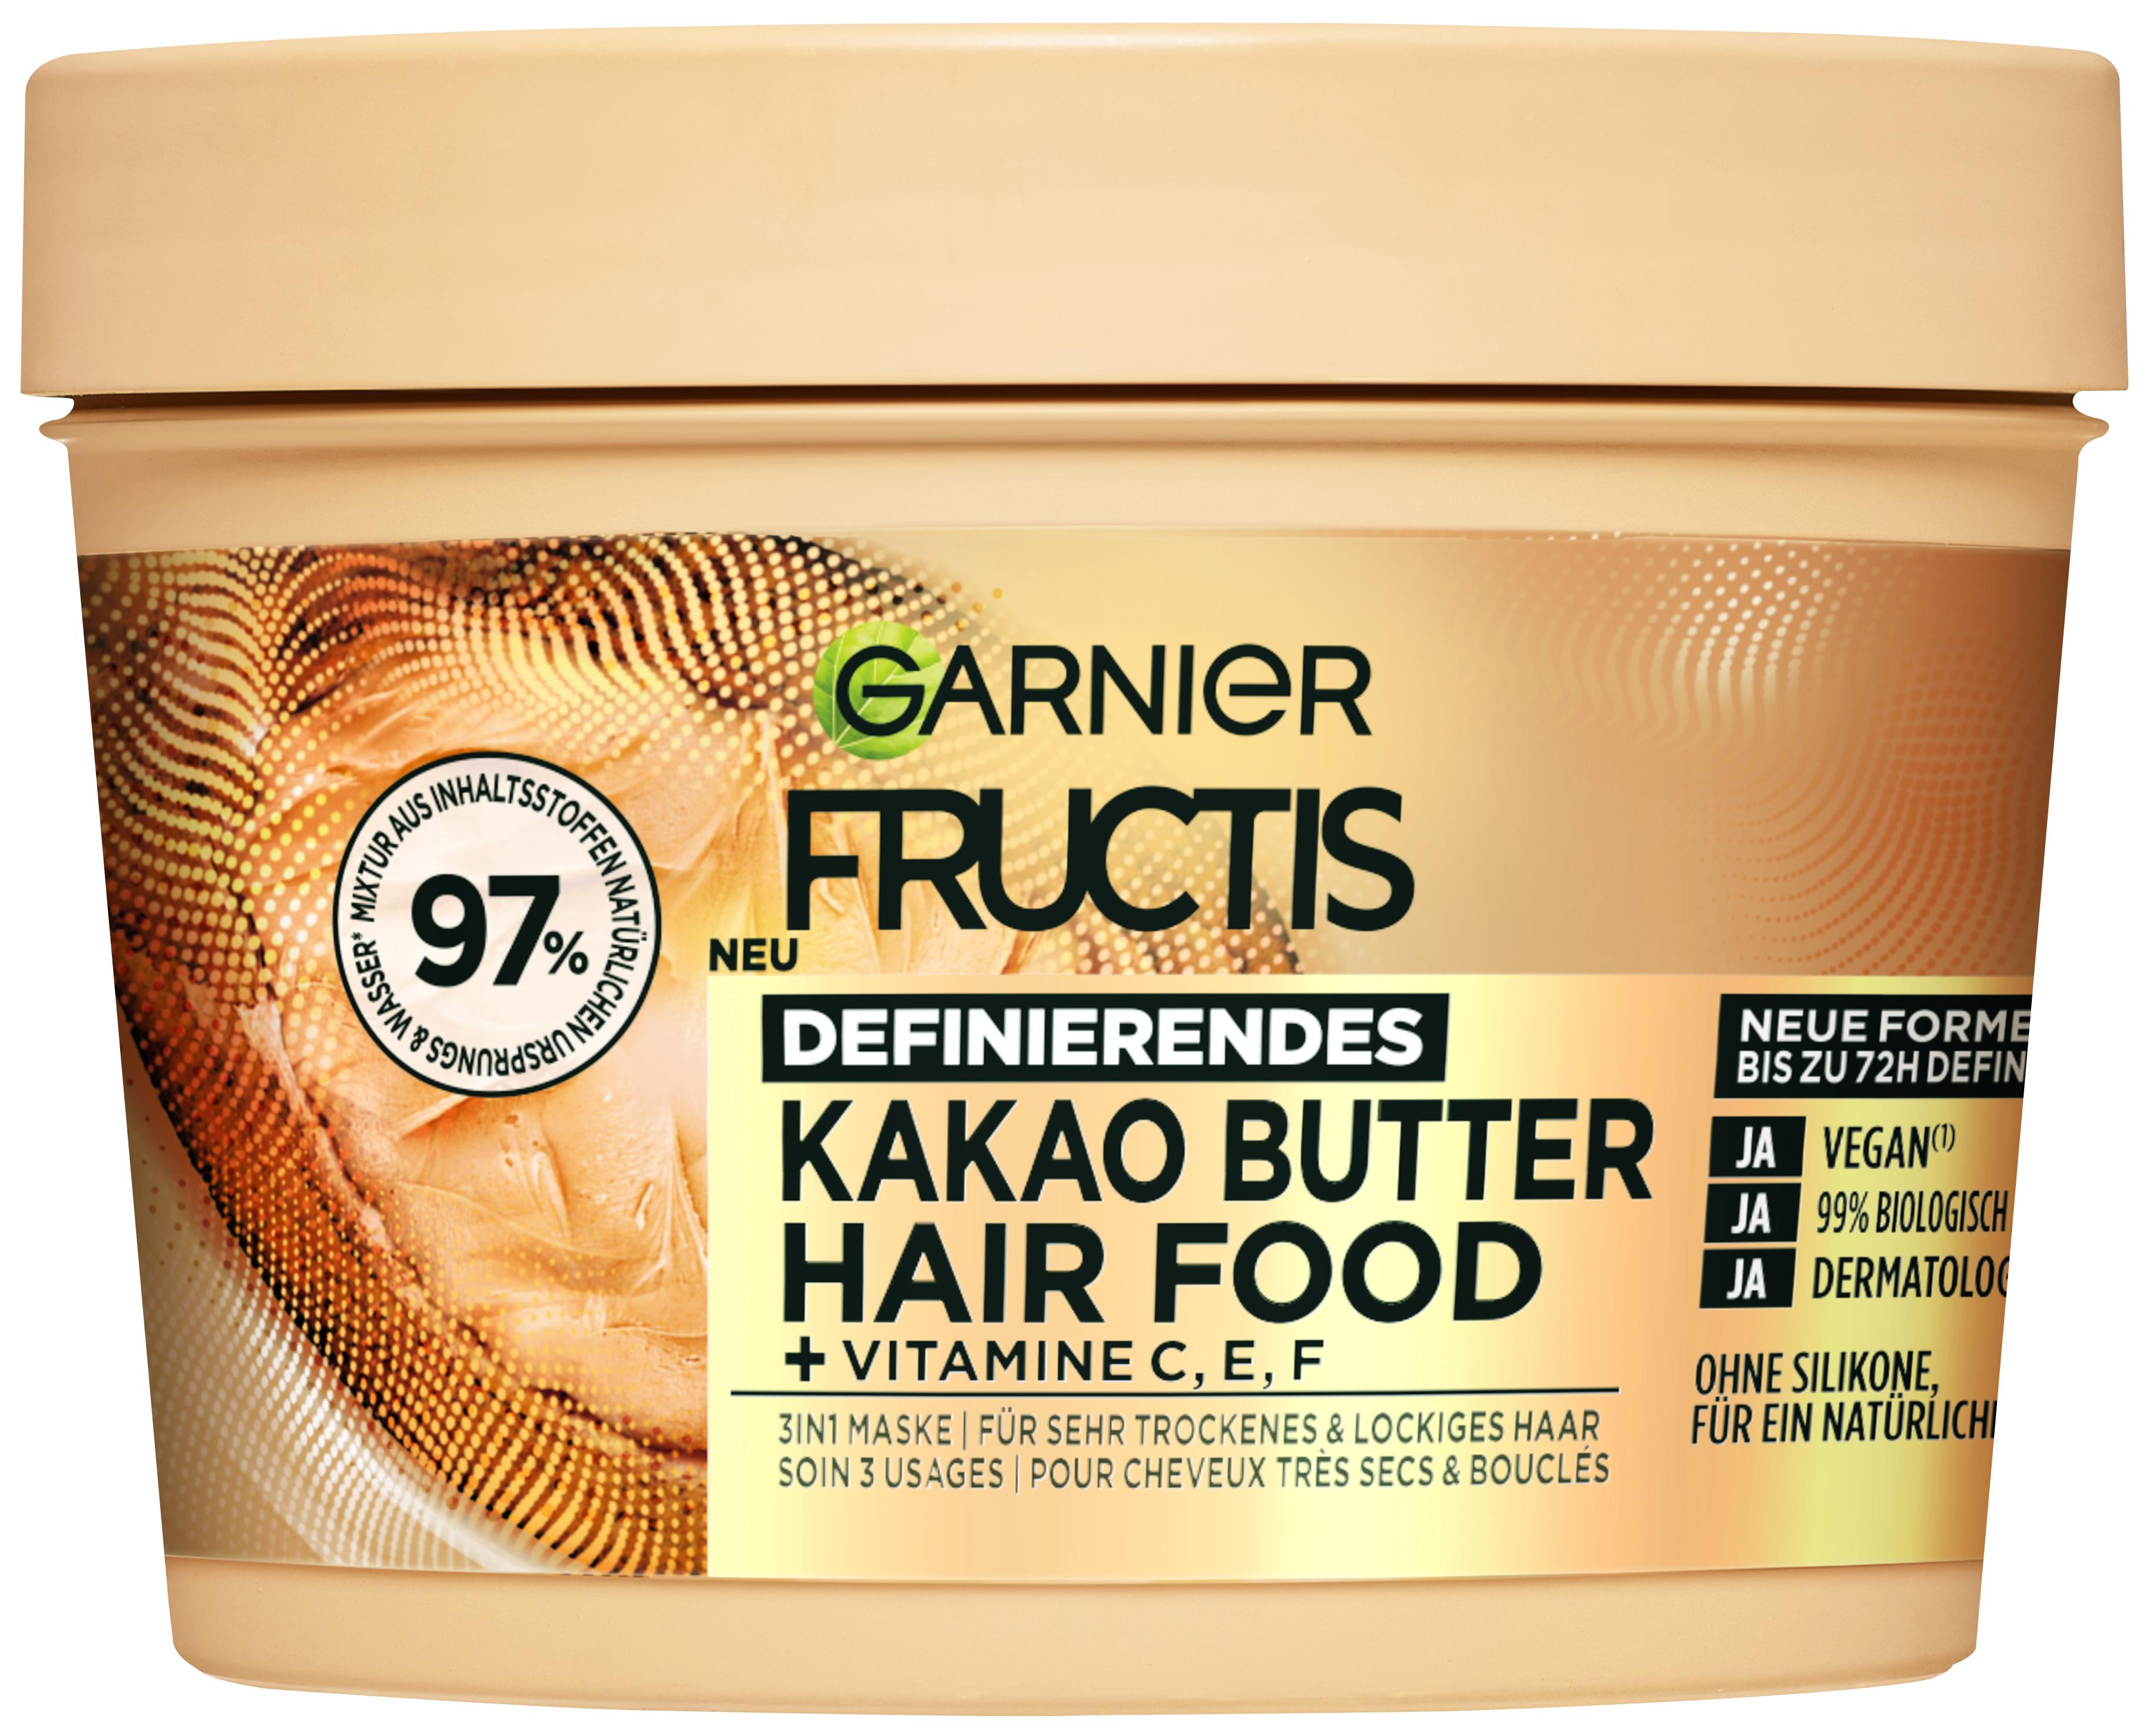 Fructis - Definierendes Kakao Butter Hair Food 3in1 Haarmaske für trockenes und lockiges Haar